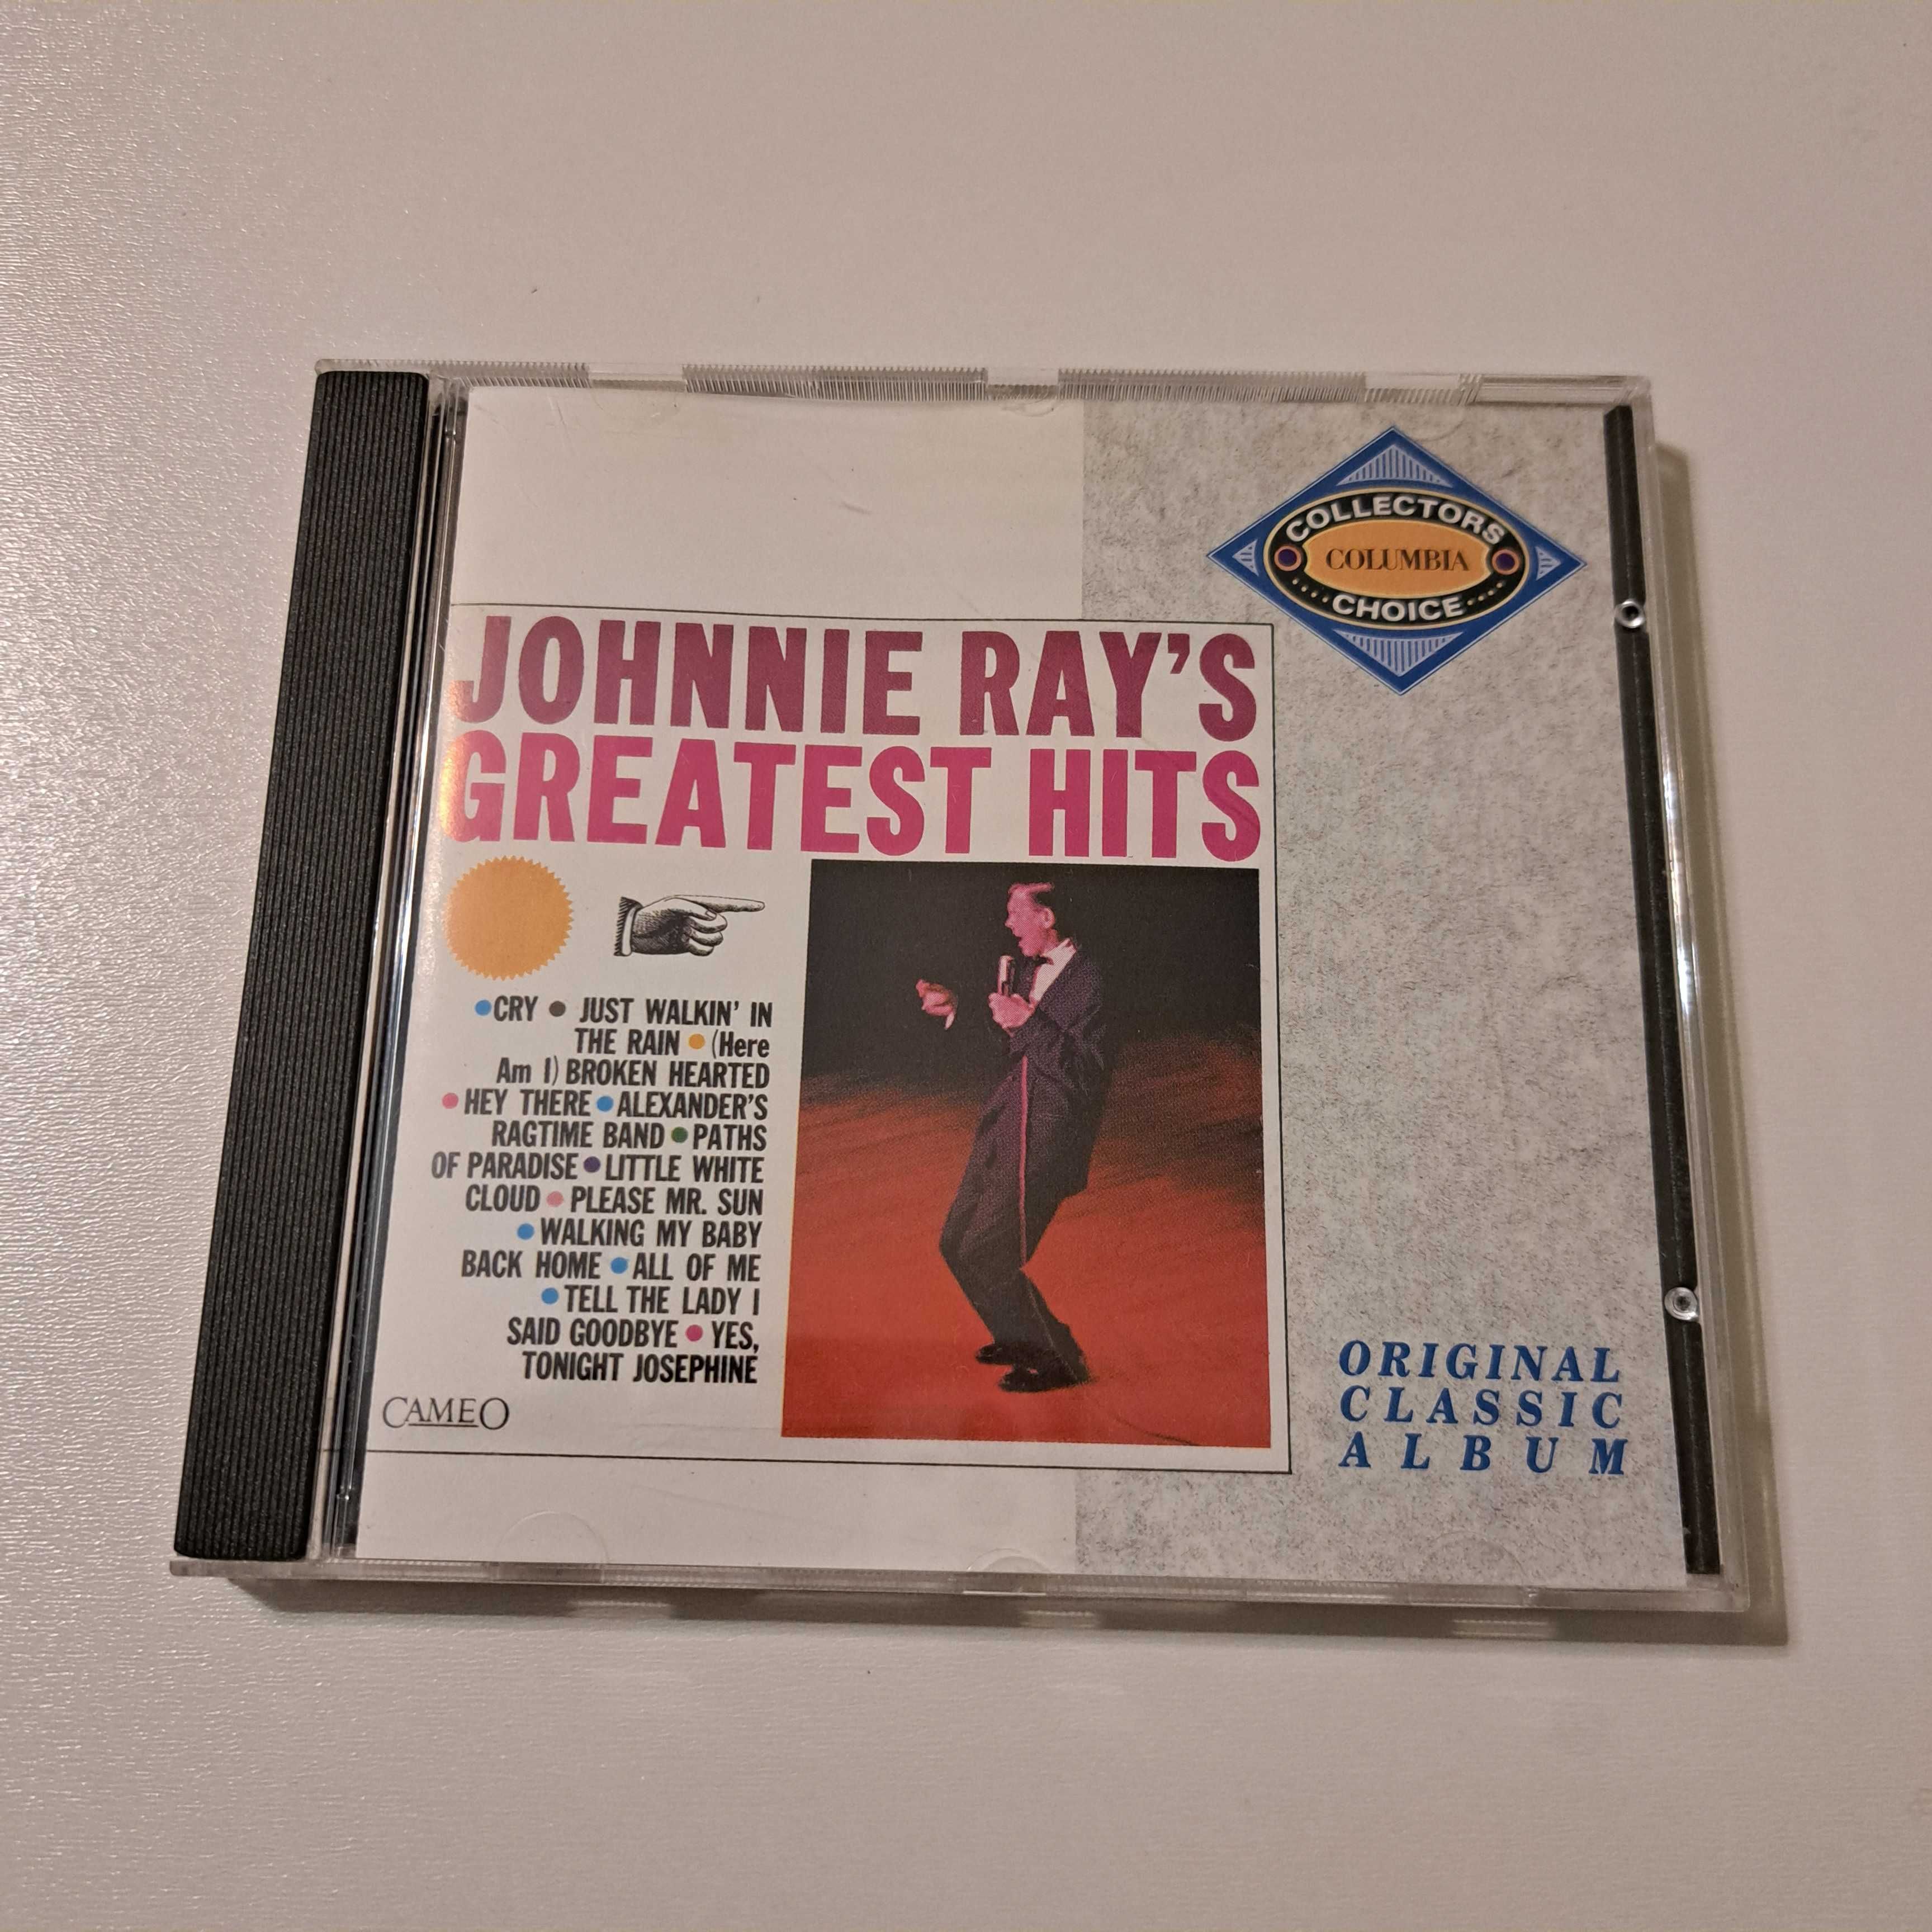 Płyta CD  Johnnie Ray's - Greatest Hits  nr729